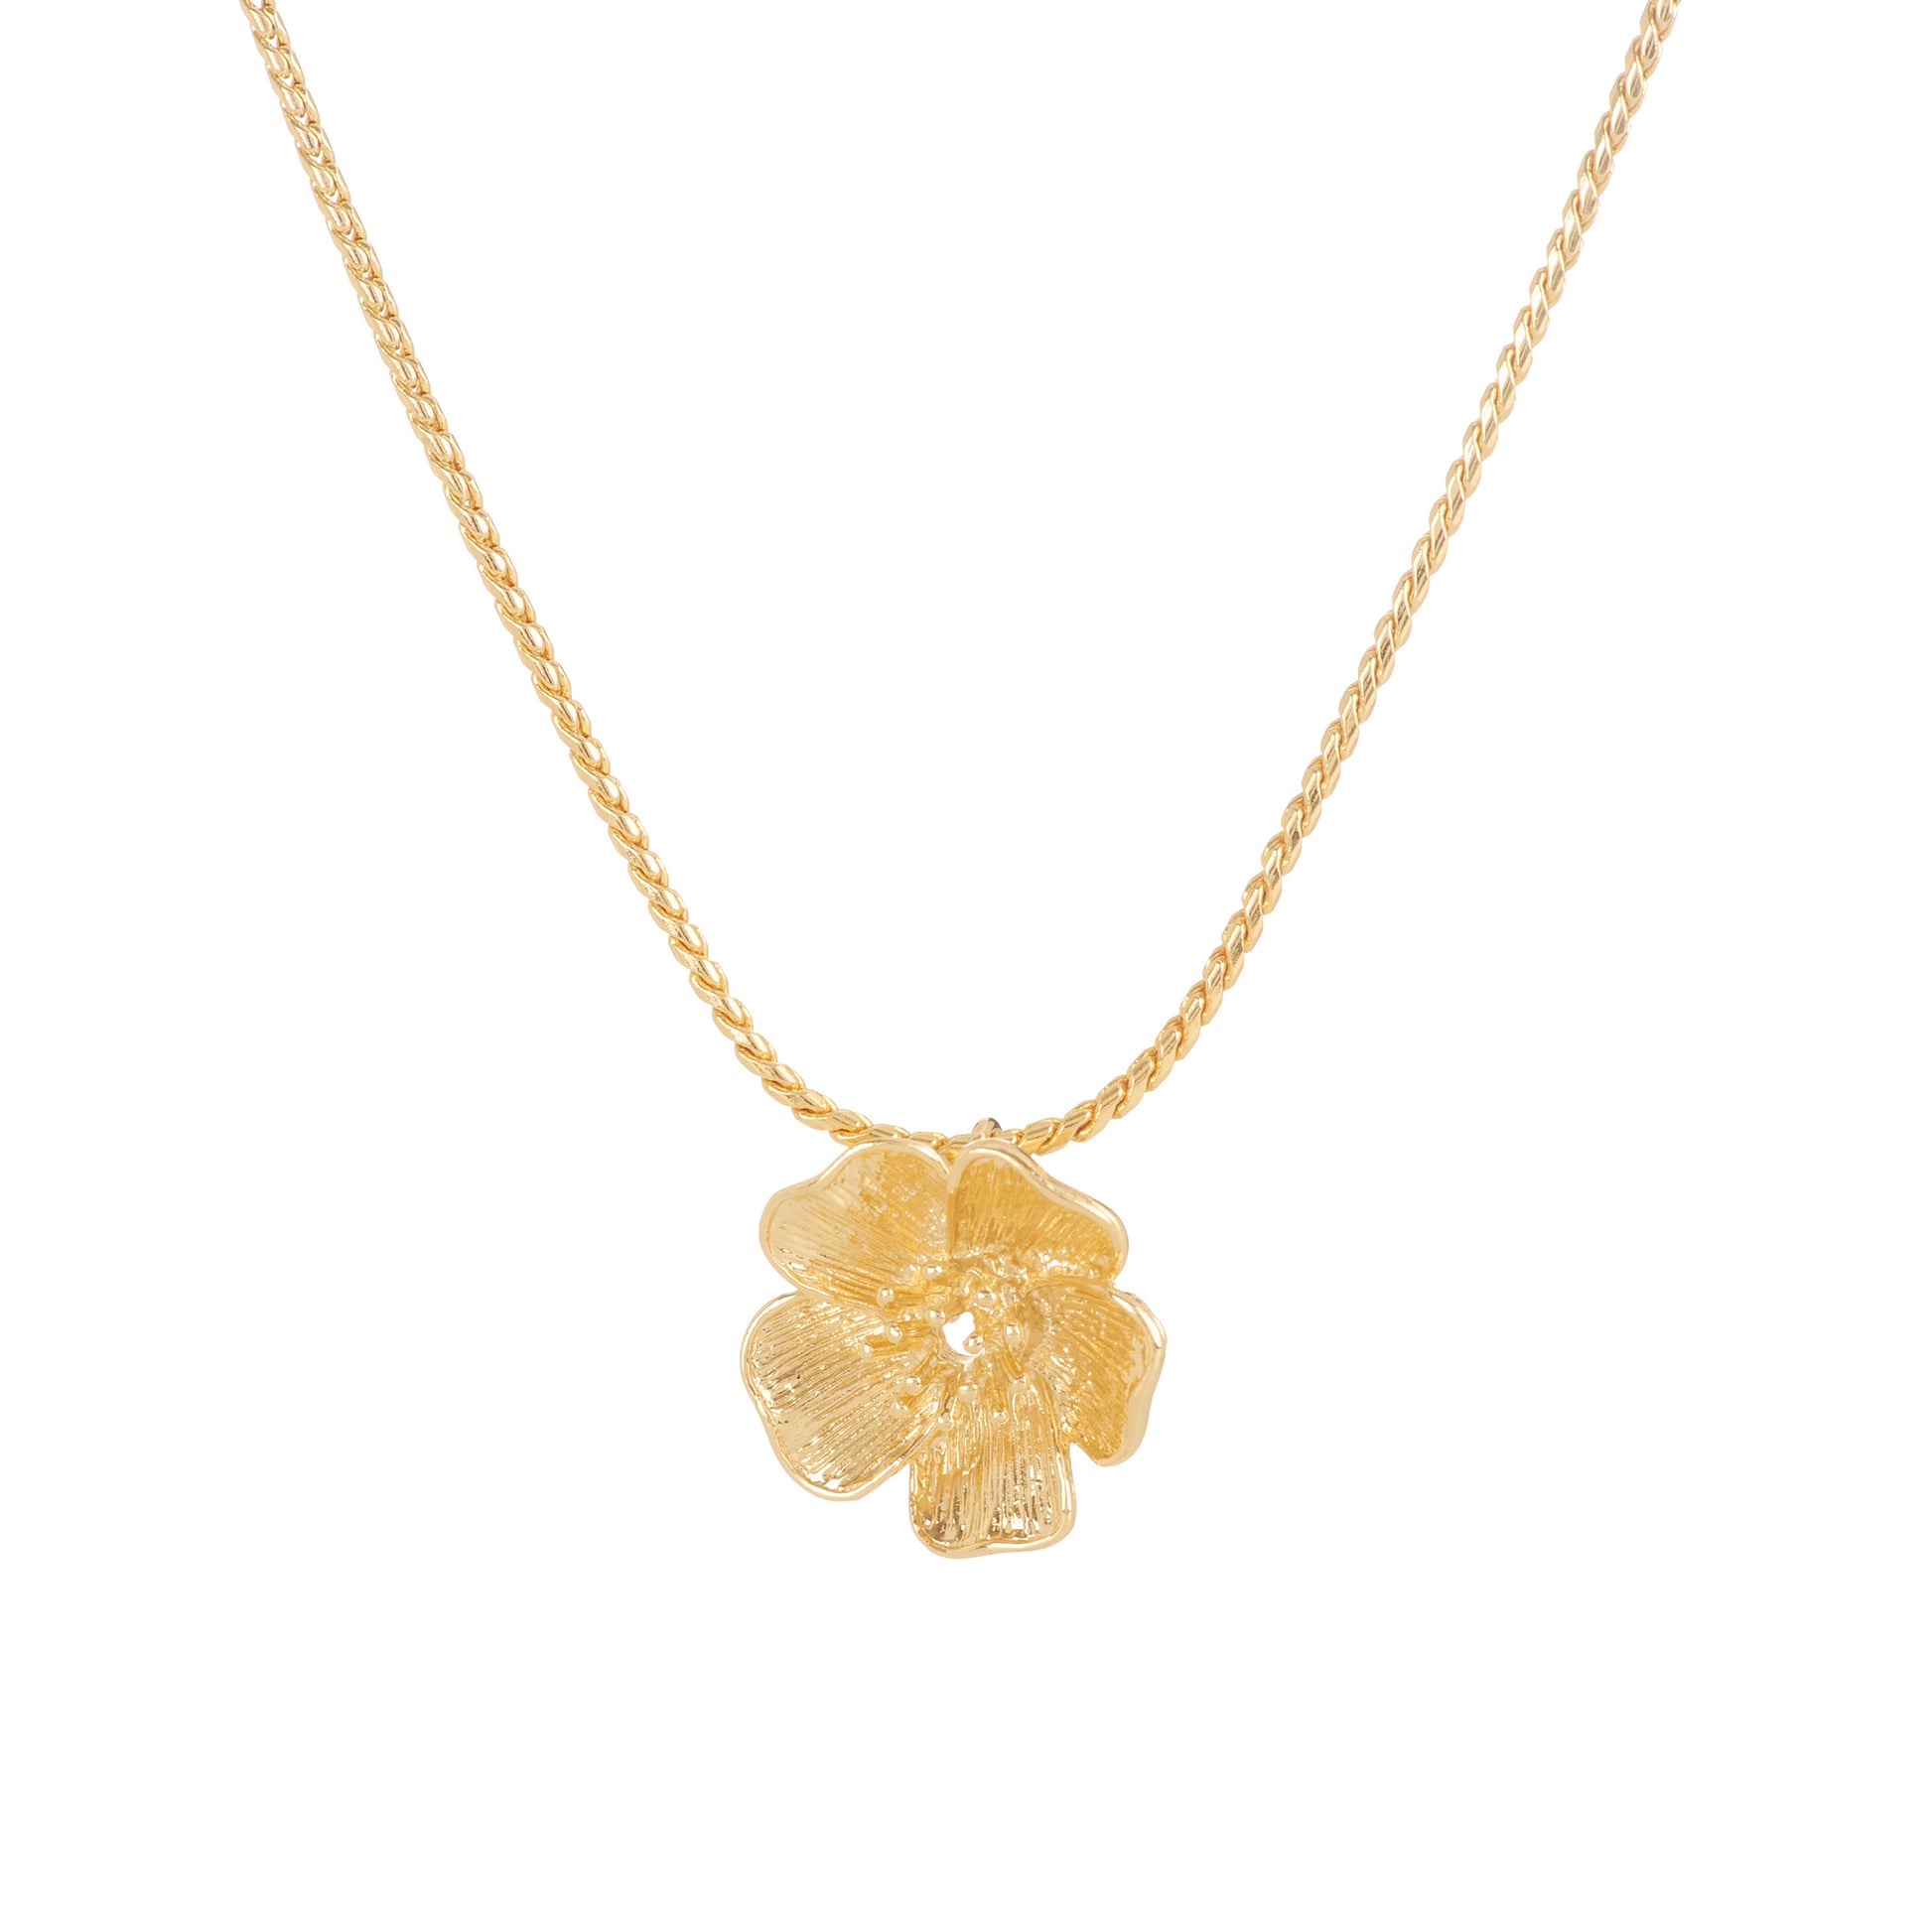 Le collier Hibiscus est composé d'une chaine tressée et d'un pendentif en fleur d'hibiscus.